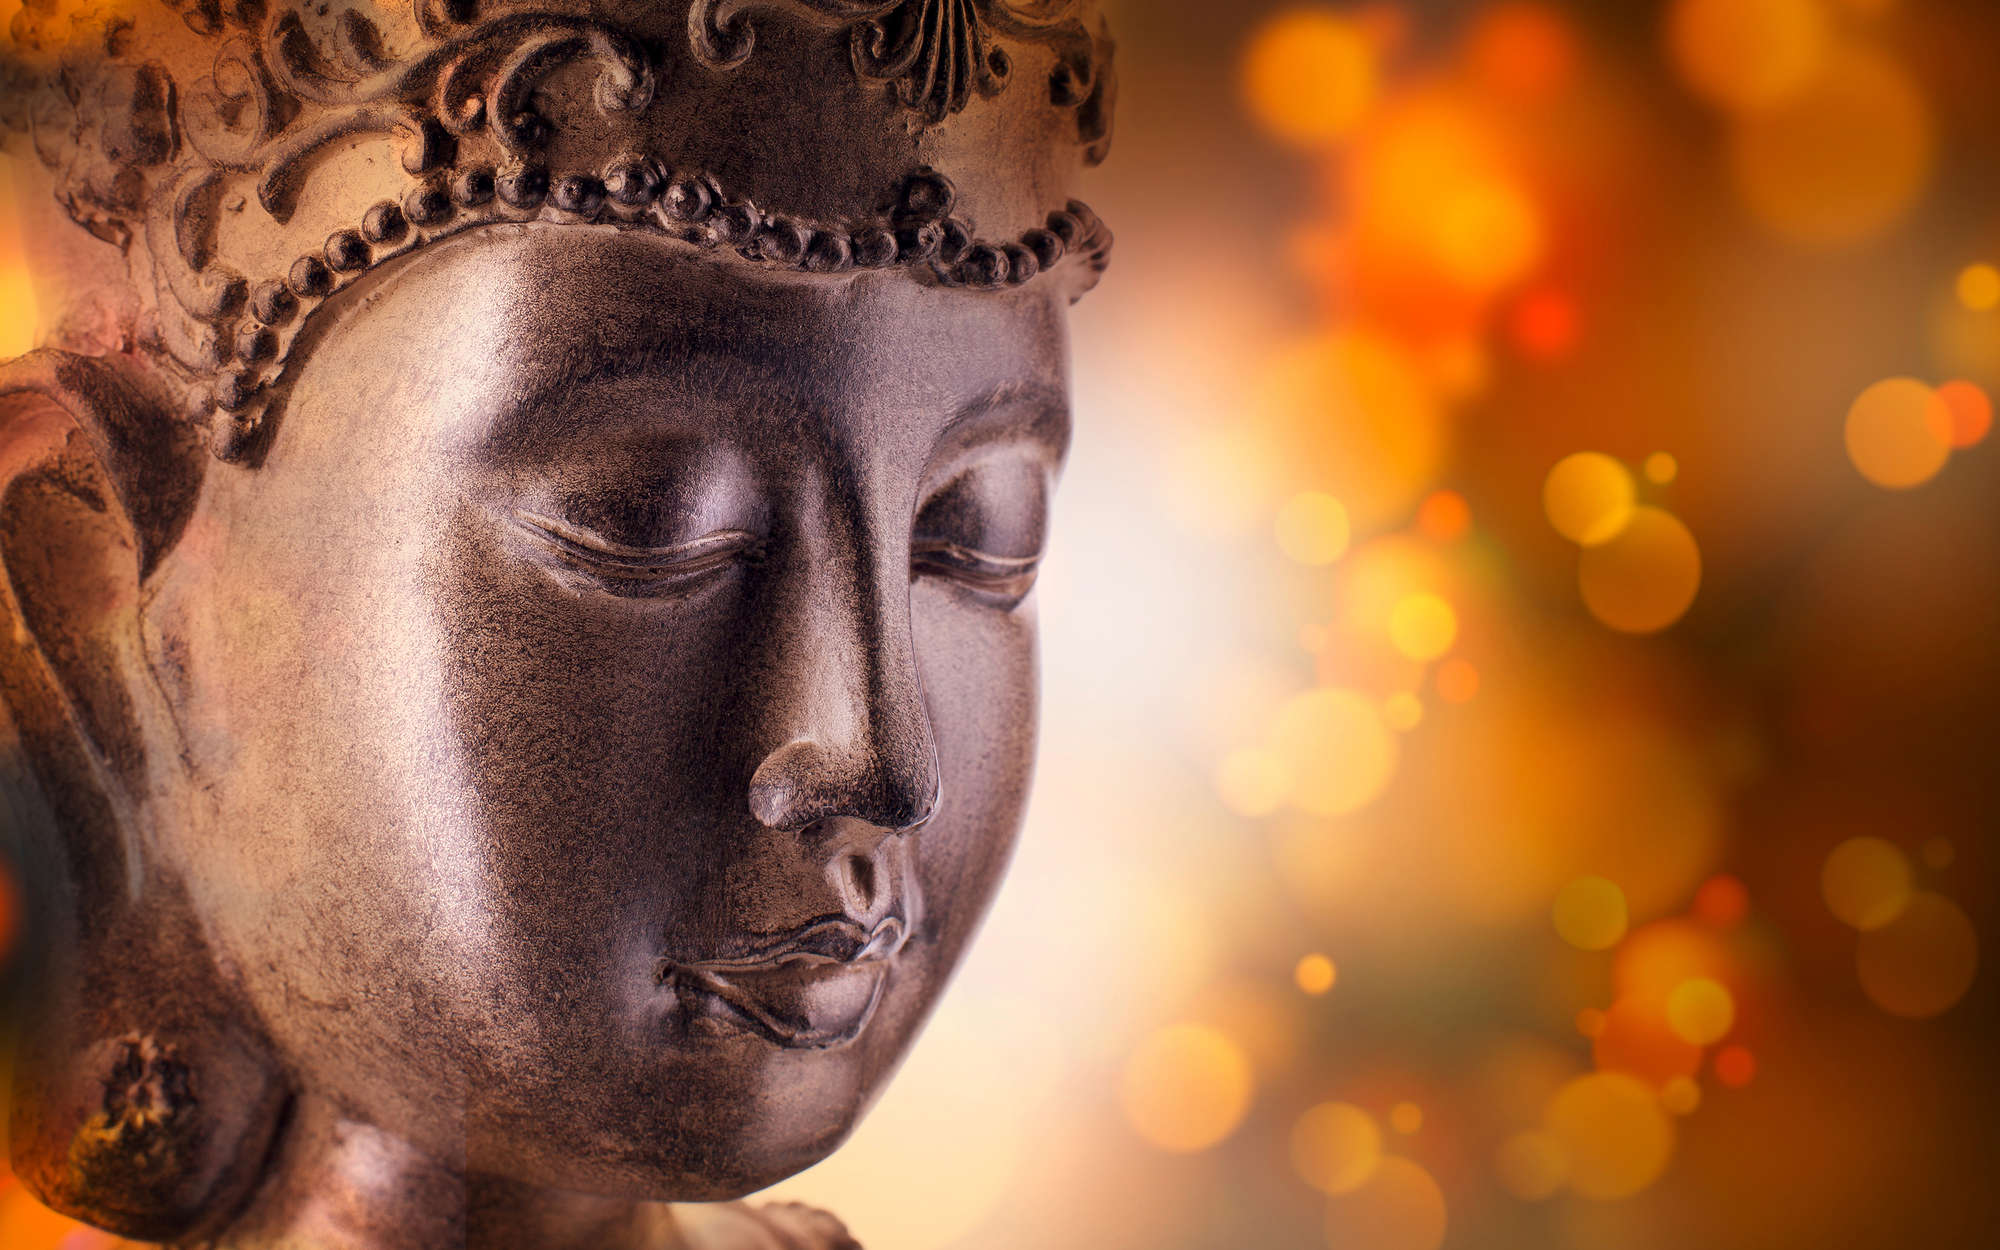             papiers peints à impression numérique Détail de la statue de Bouddha - nacre intissé lisse
        